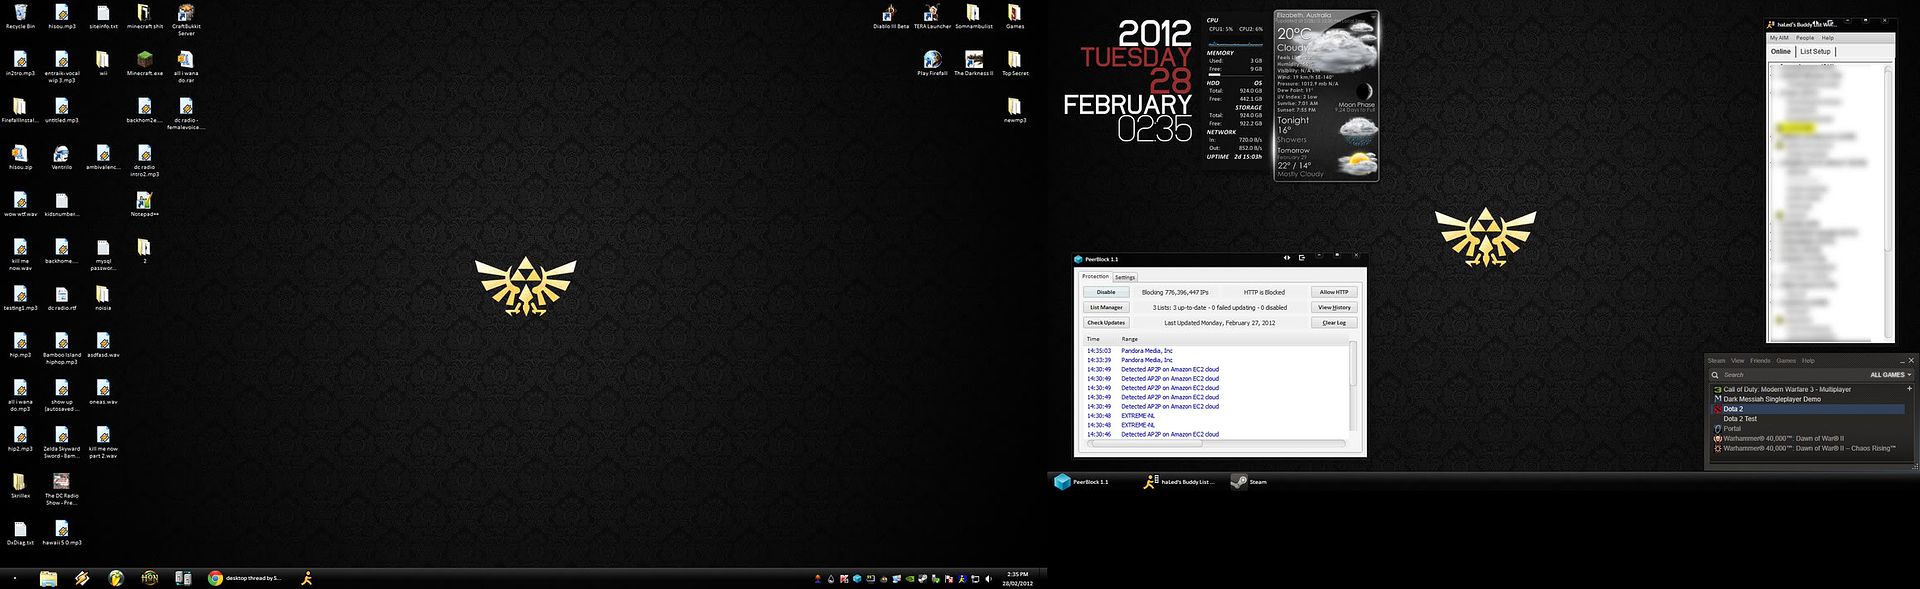 2012desktop.jpg